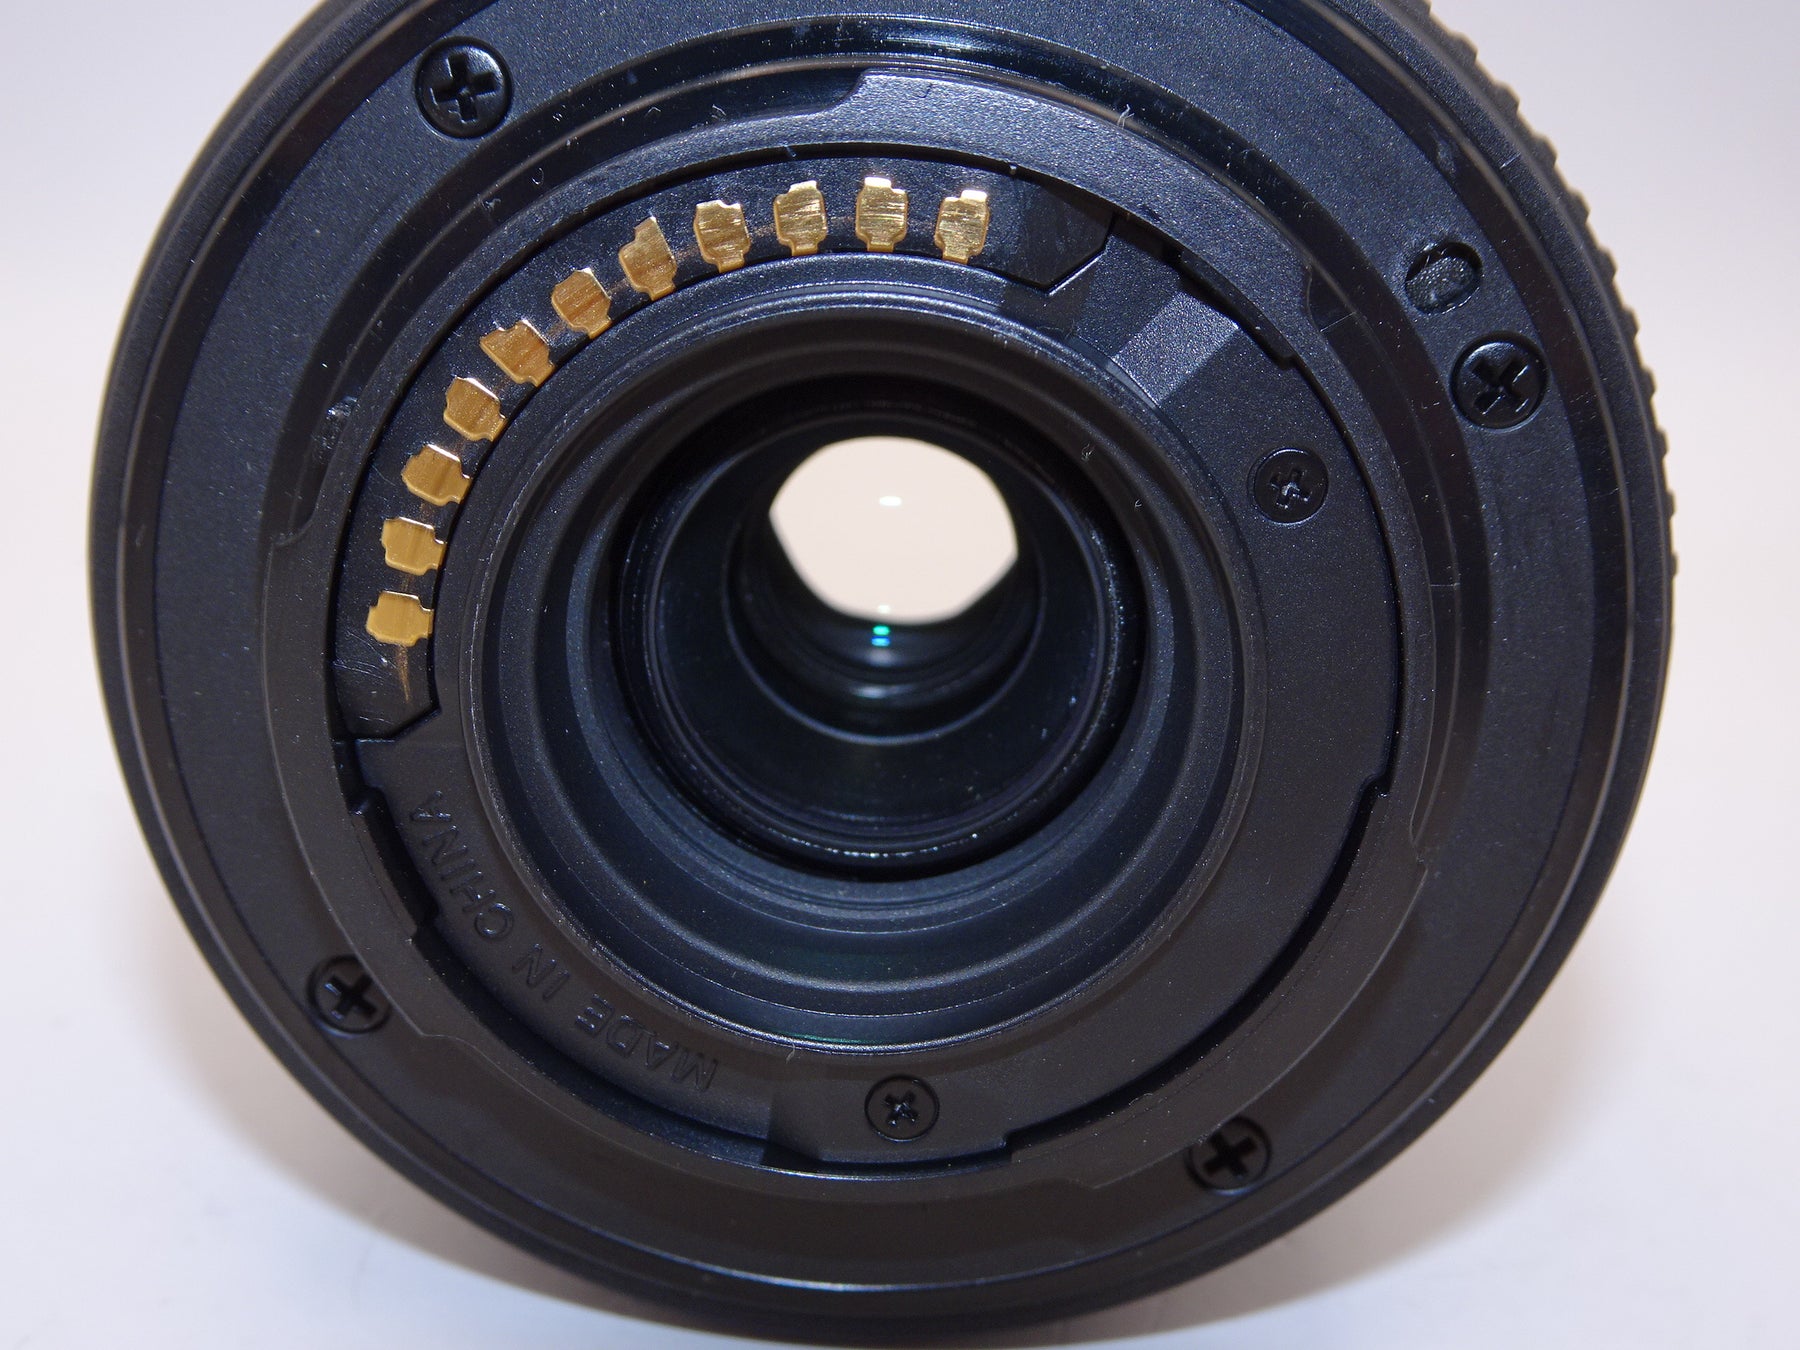 【外観特上級】OLYMPUS 望遠ズームレンズ M.ZUIKO DIGITAL ED 40-150mm F4.0-5.6 R ブラック